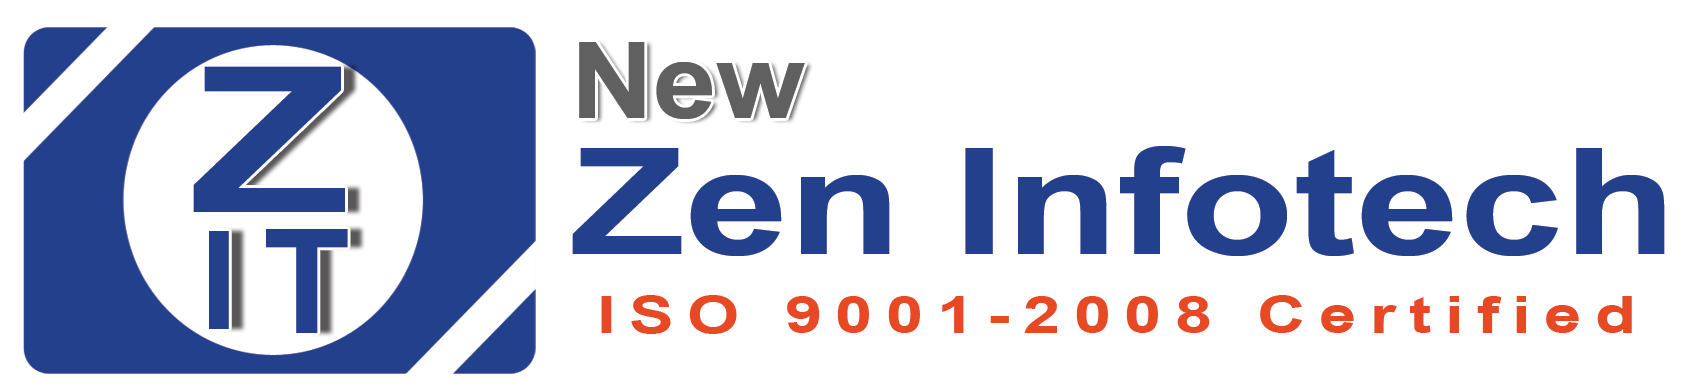 NewZen Infotech